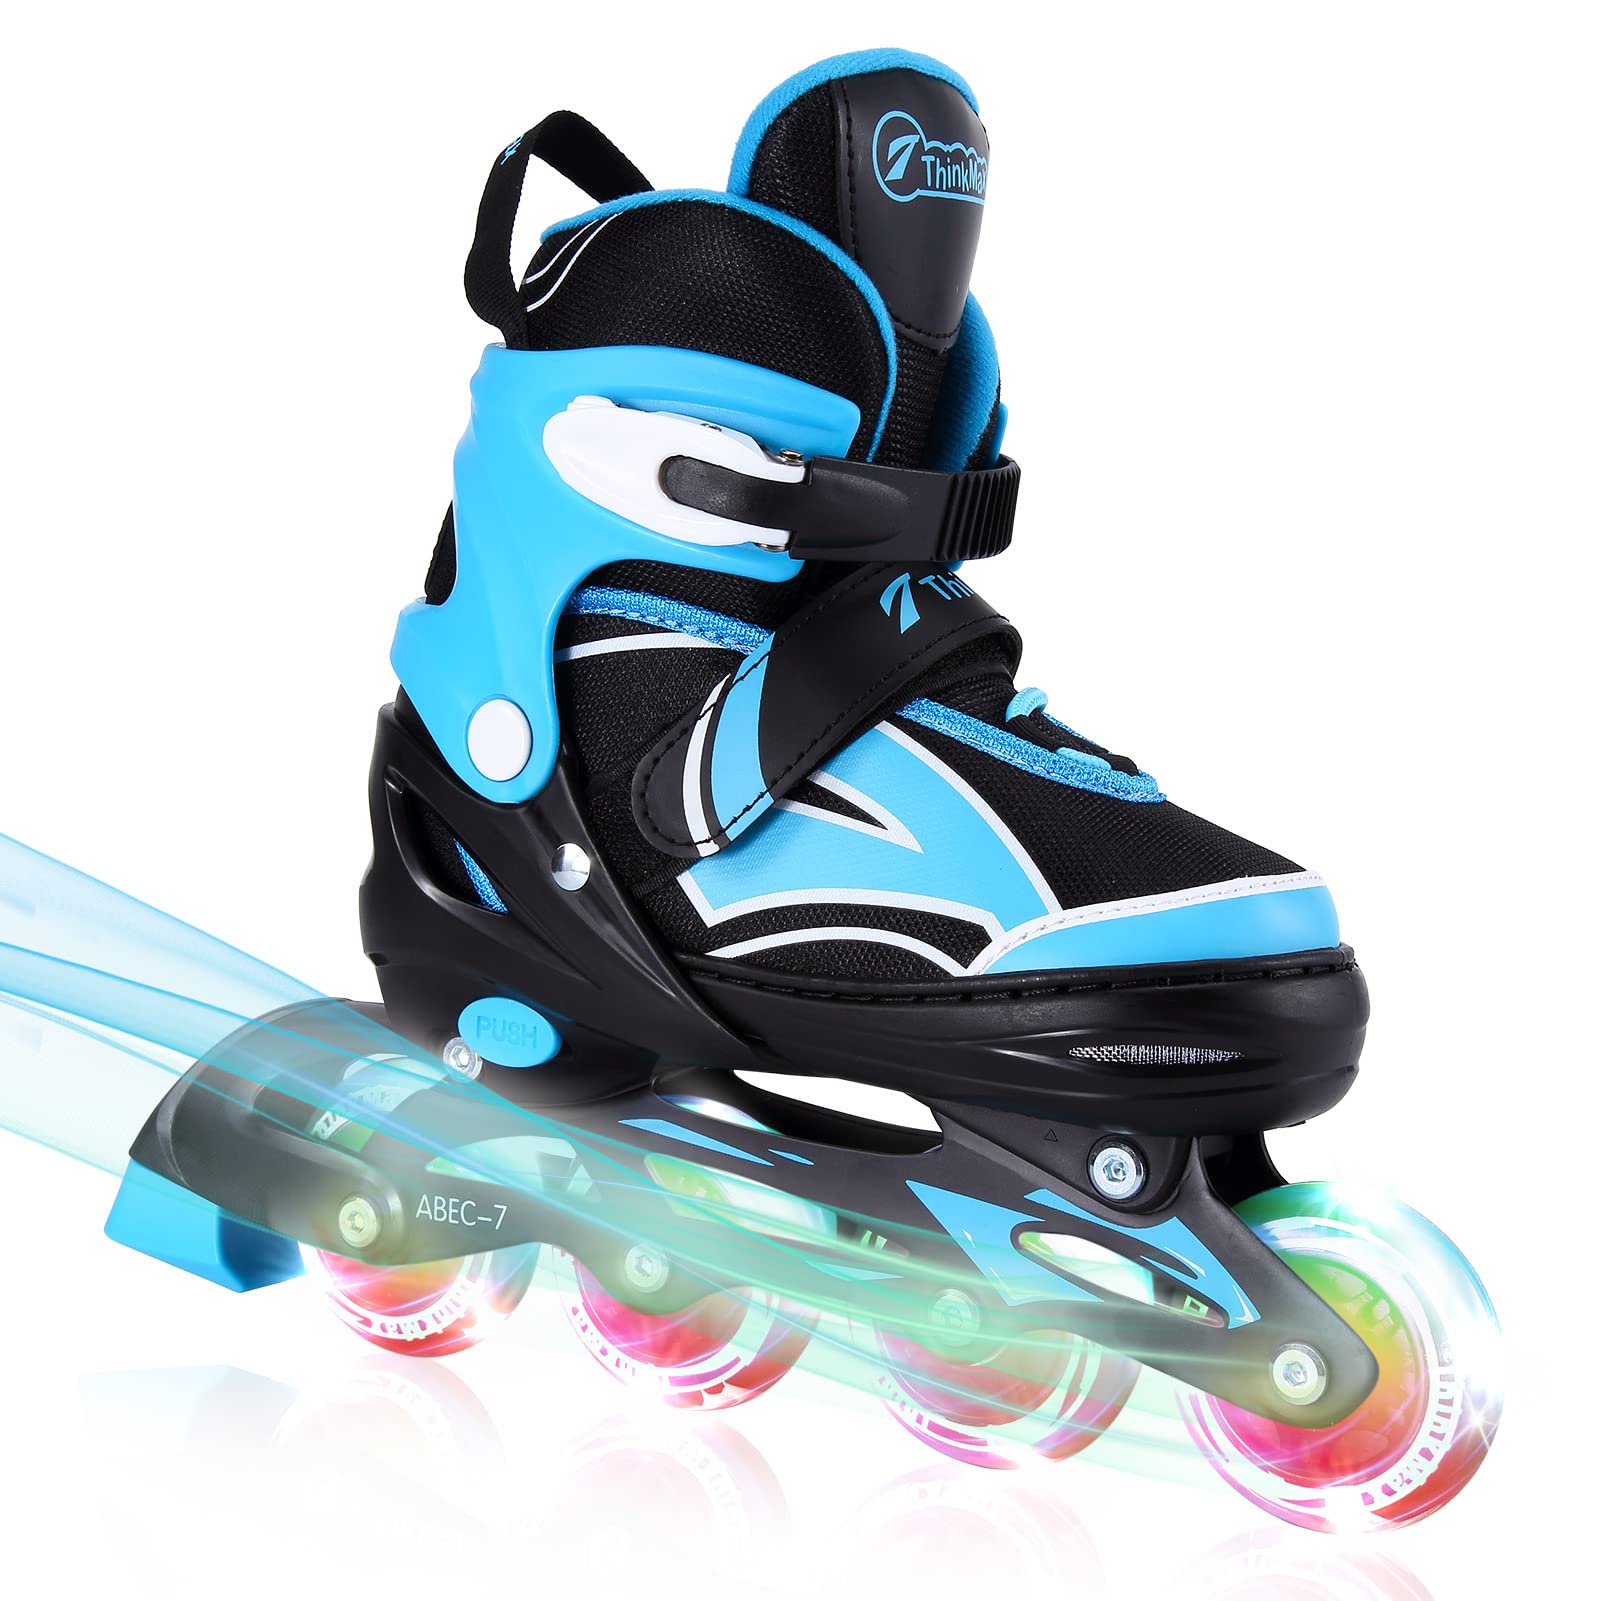 Kids Roller Skates Adjustable Roller Skates with Light Up Wheels for Kids,  Beginner, Girls, Boys Outdoor Roller Skating for Toddlers, Skating Shoes